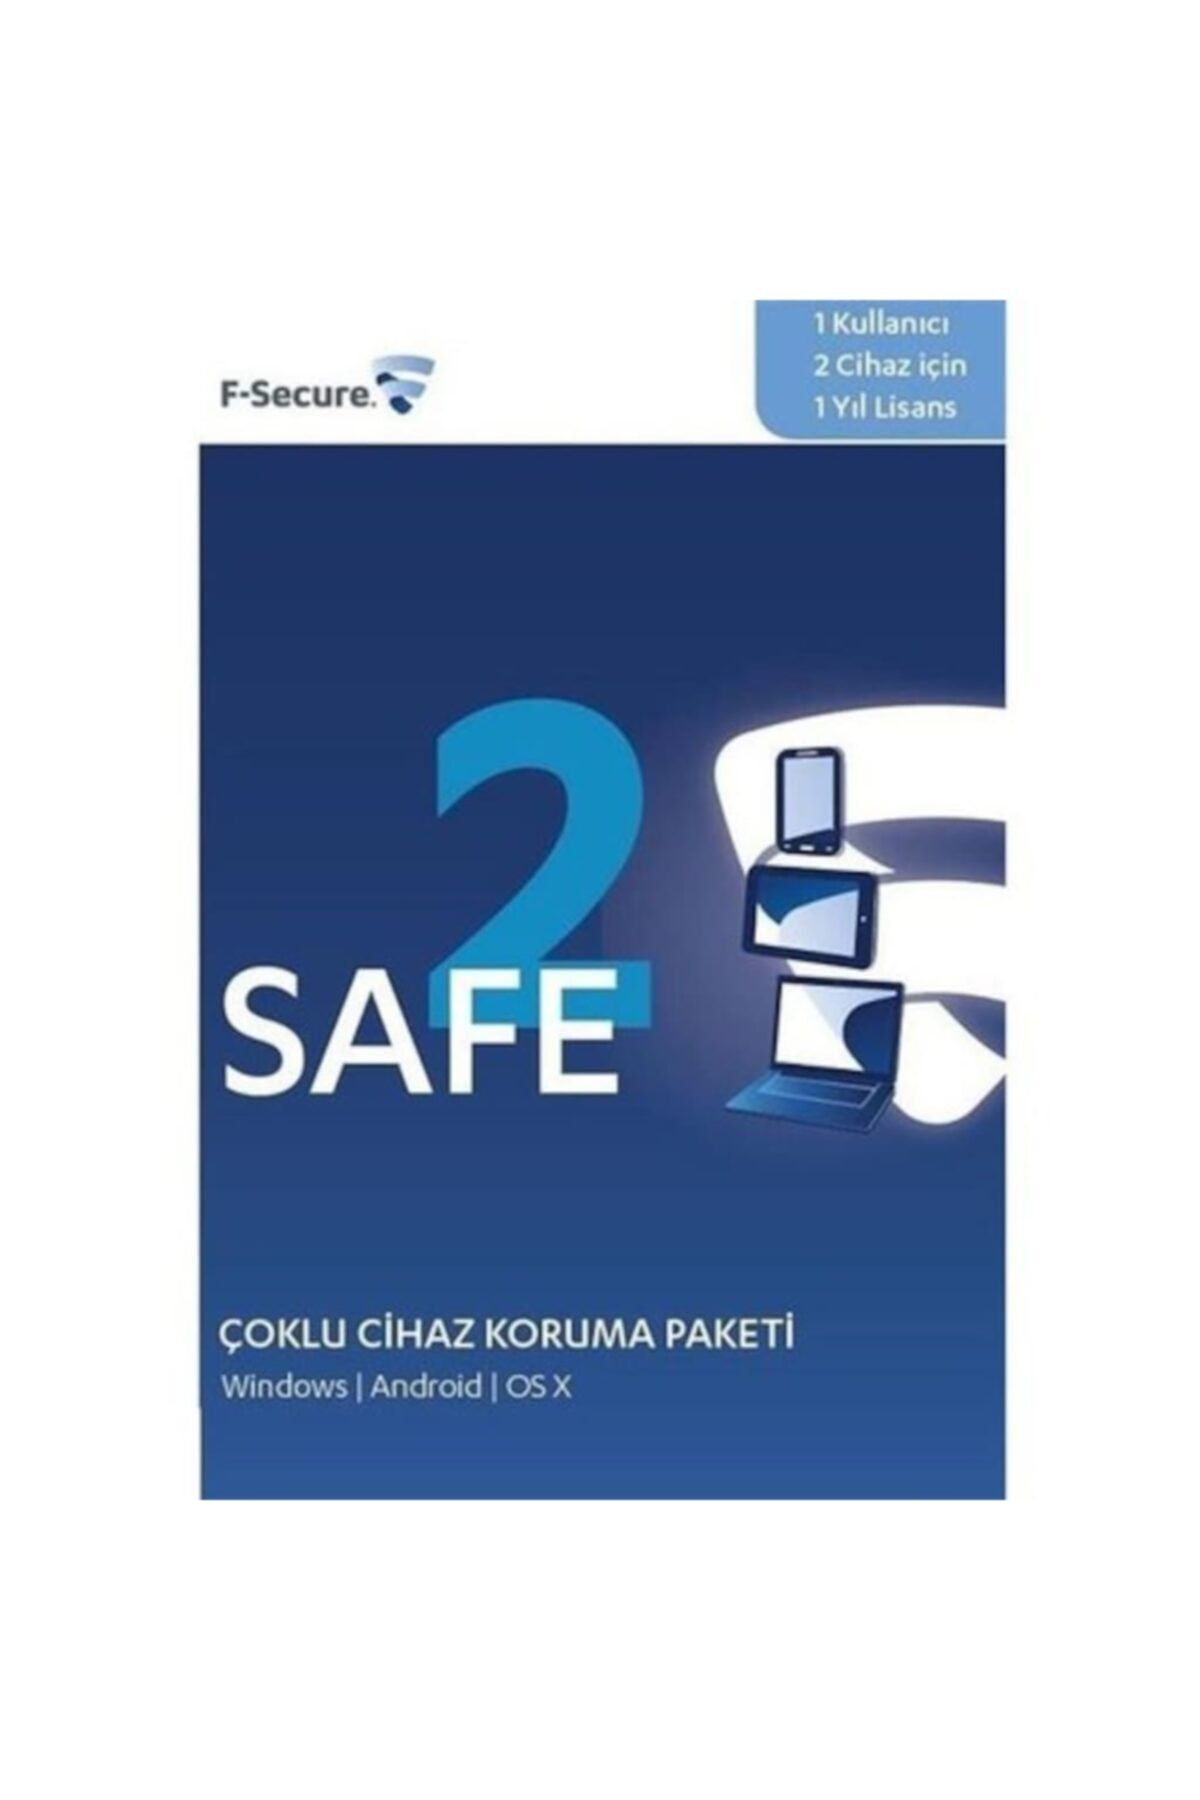 FSecure 2 Cihaz İçin Safe Virüs Programı